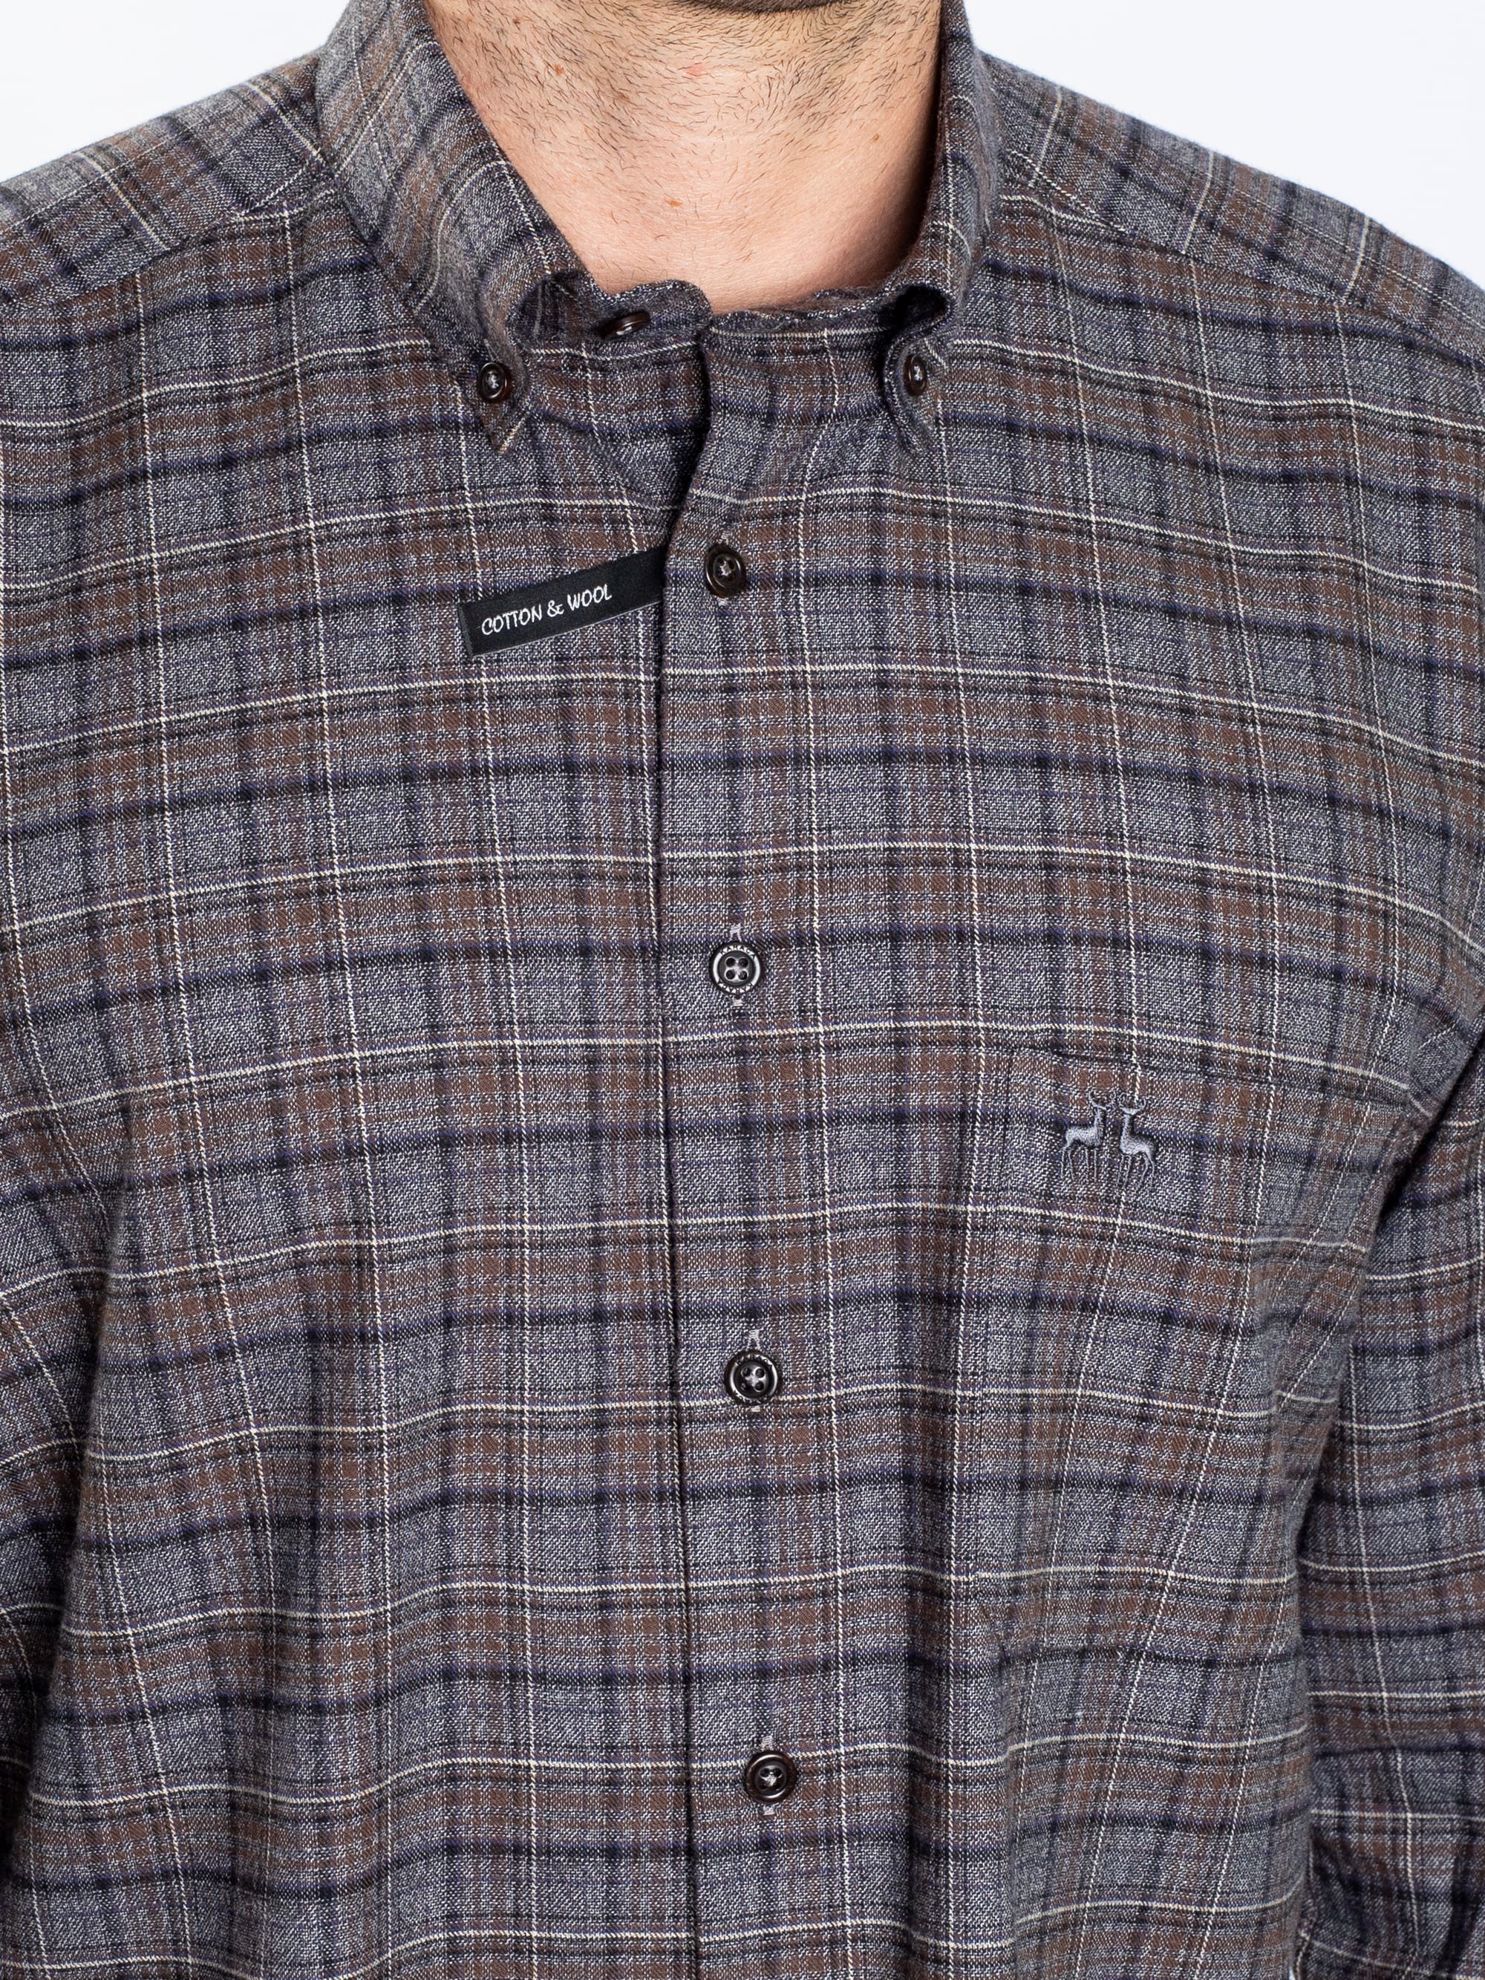 Karaca Erkek Regular Fit Gömlek-Antrasit. ürün görseli